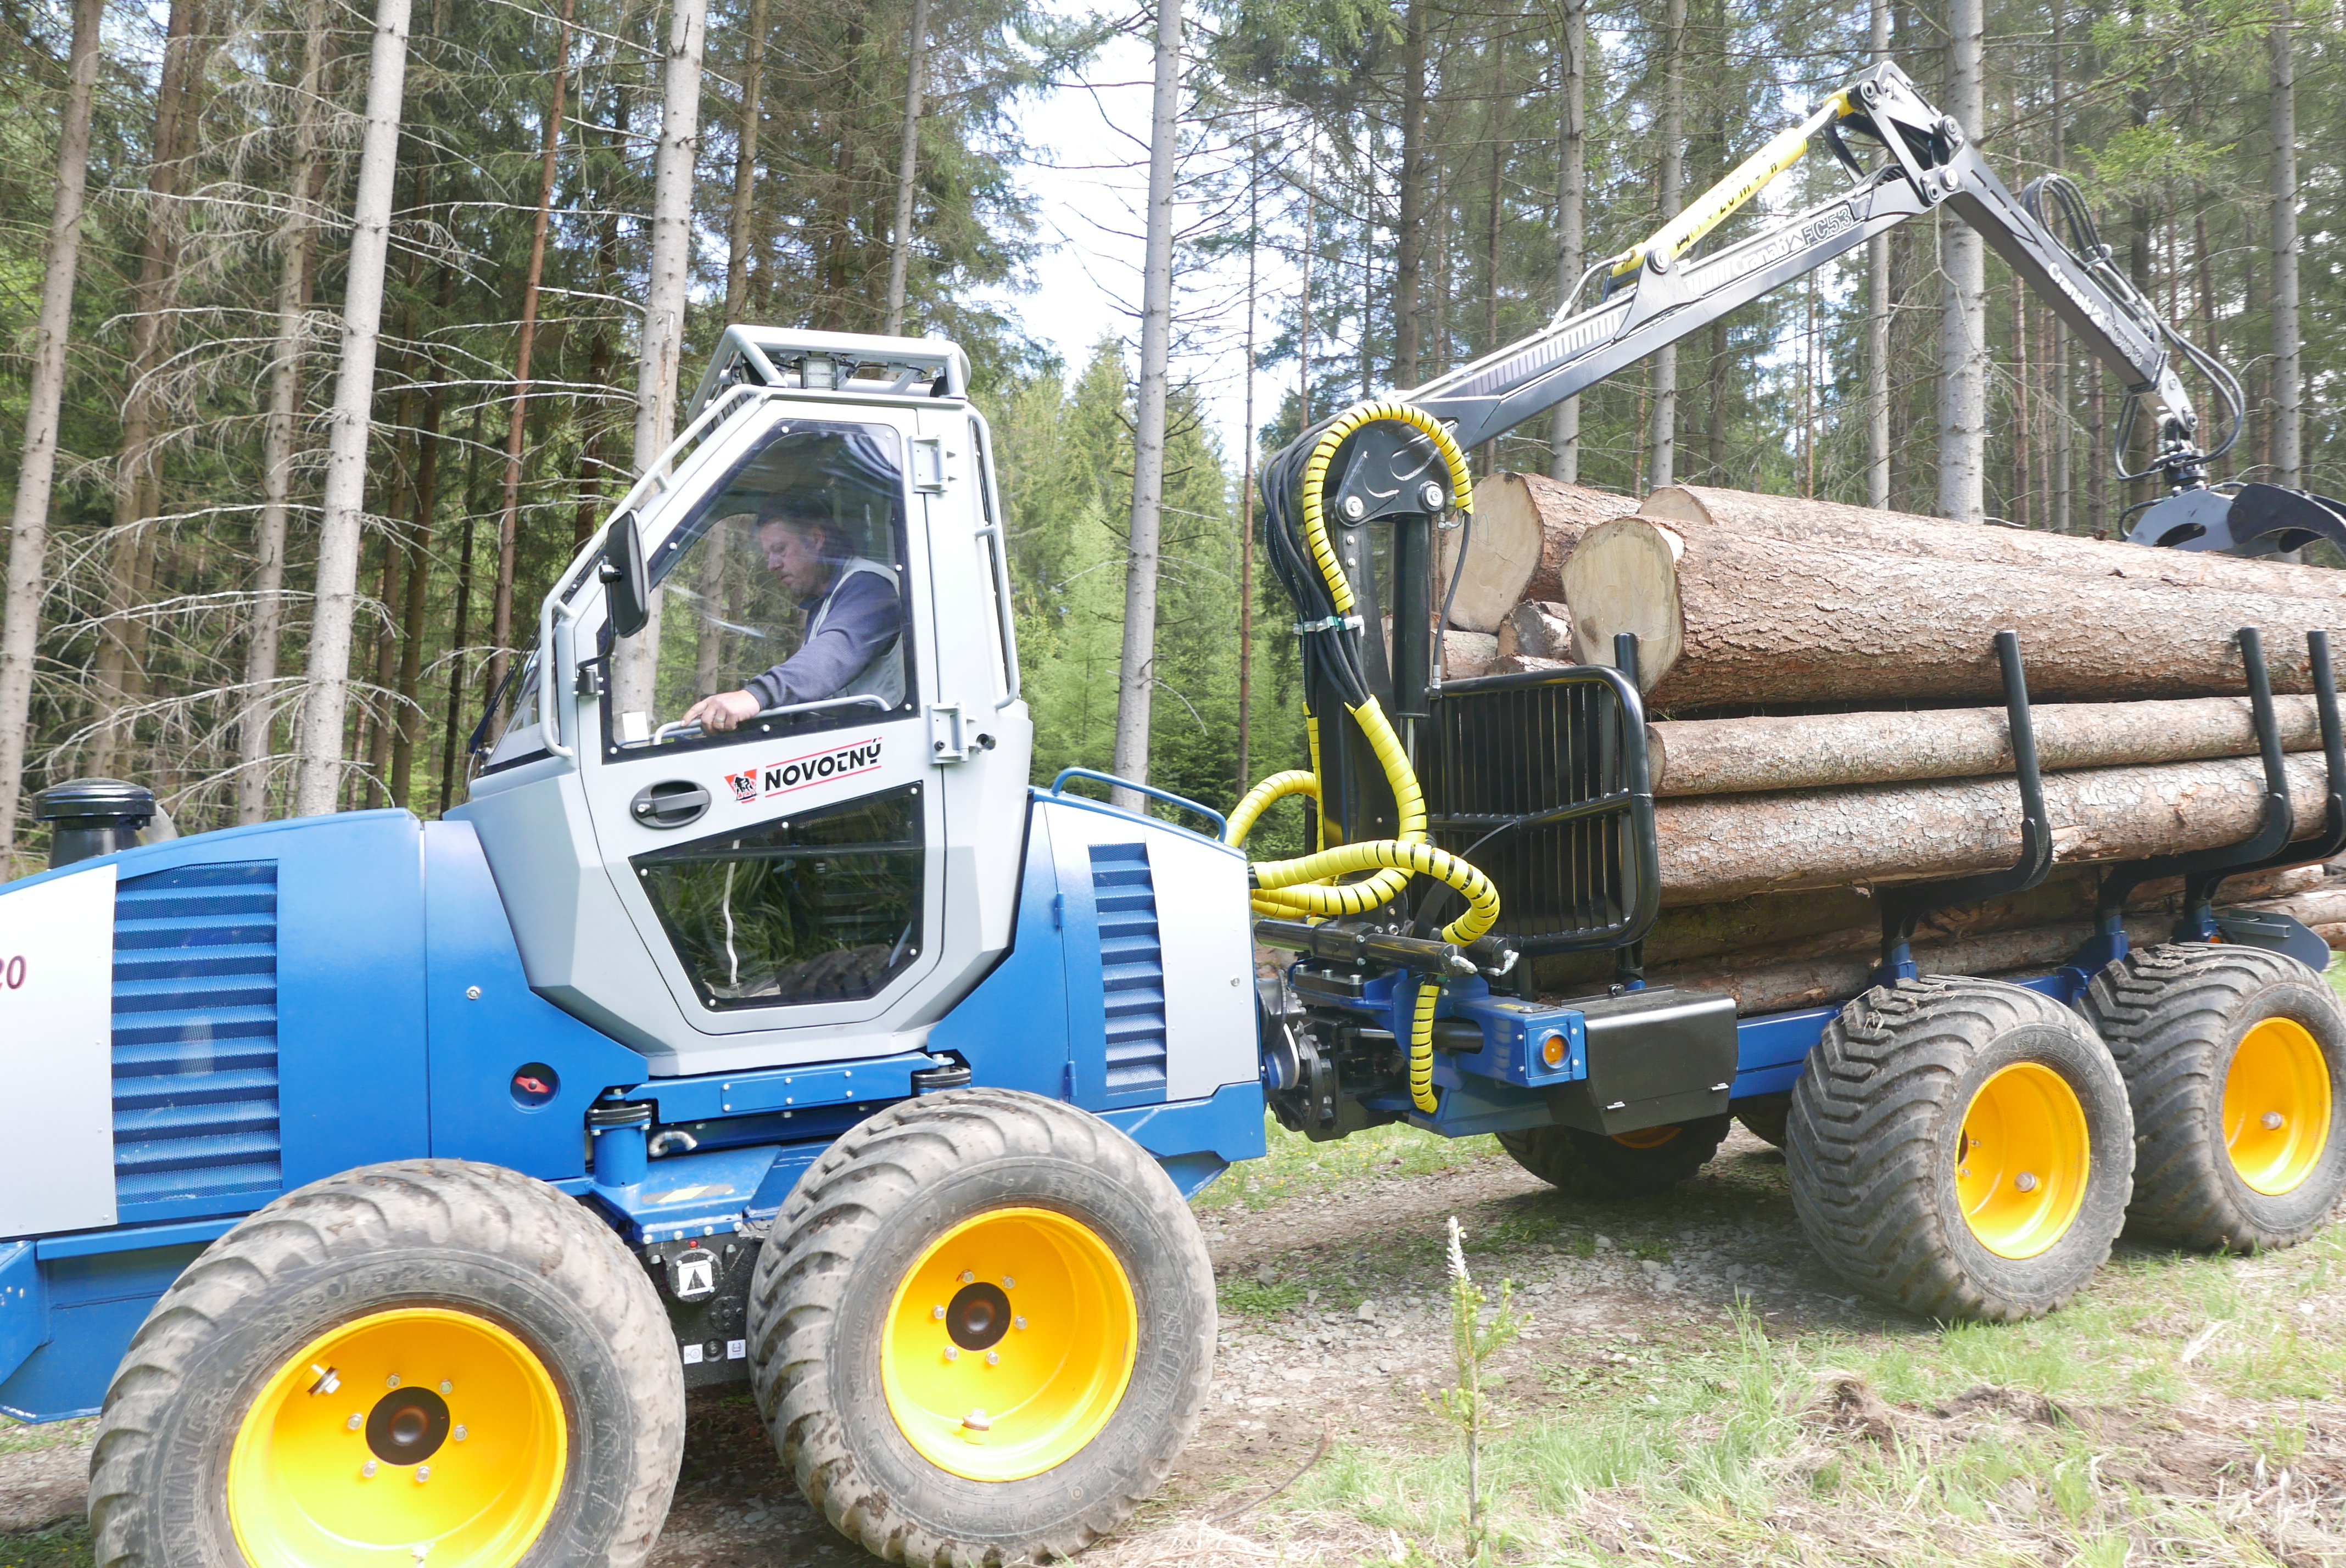 Forwarder compatto Novotný LVS 520 per un lavoro confortevole e sostenibile in foresta.